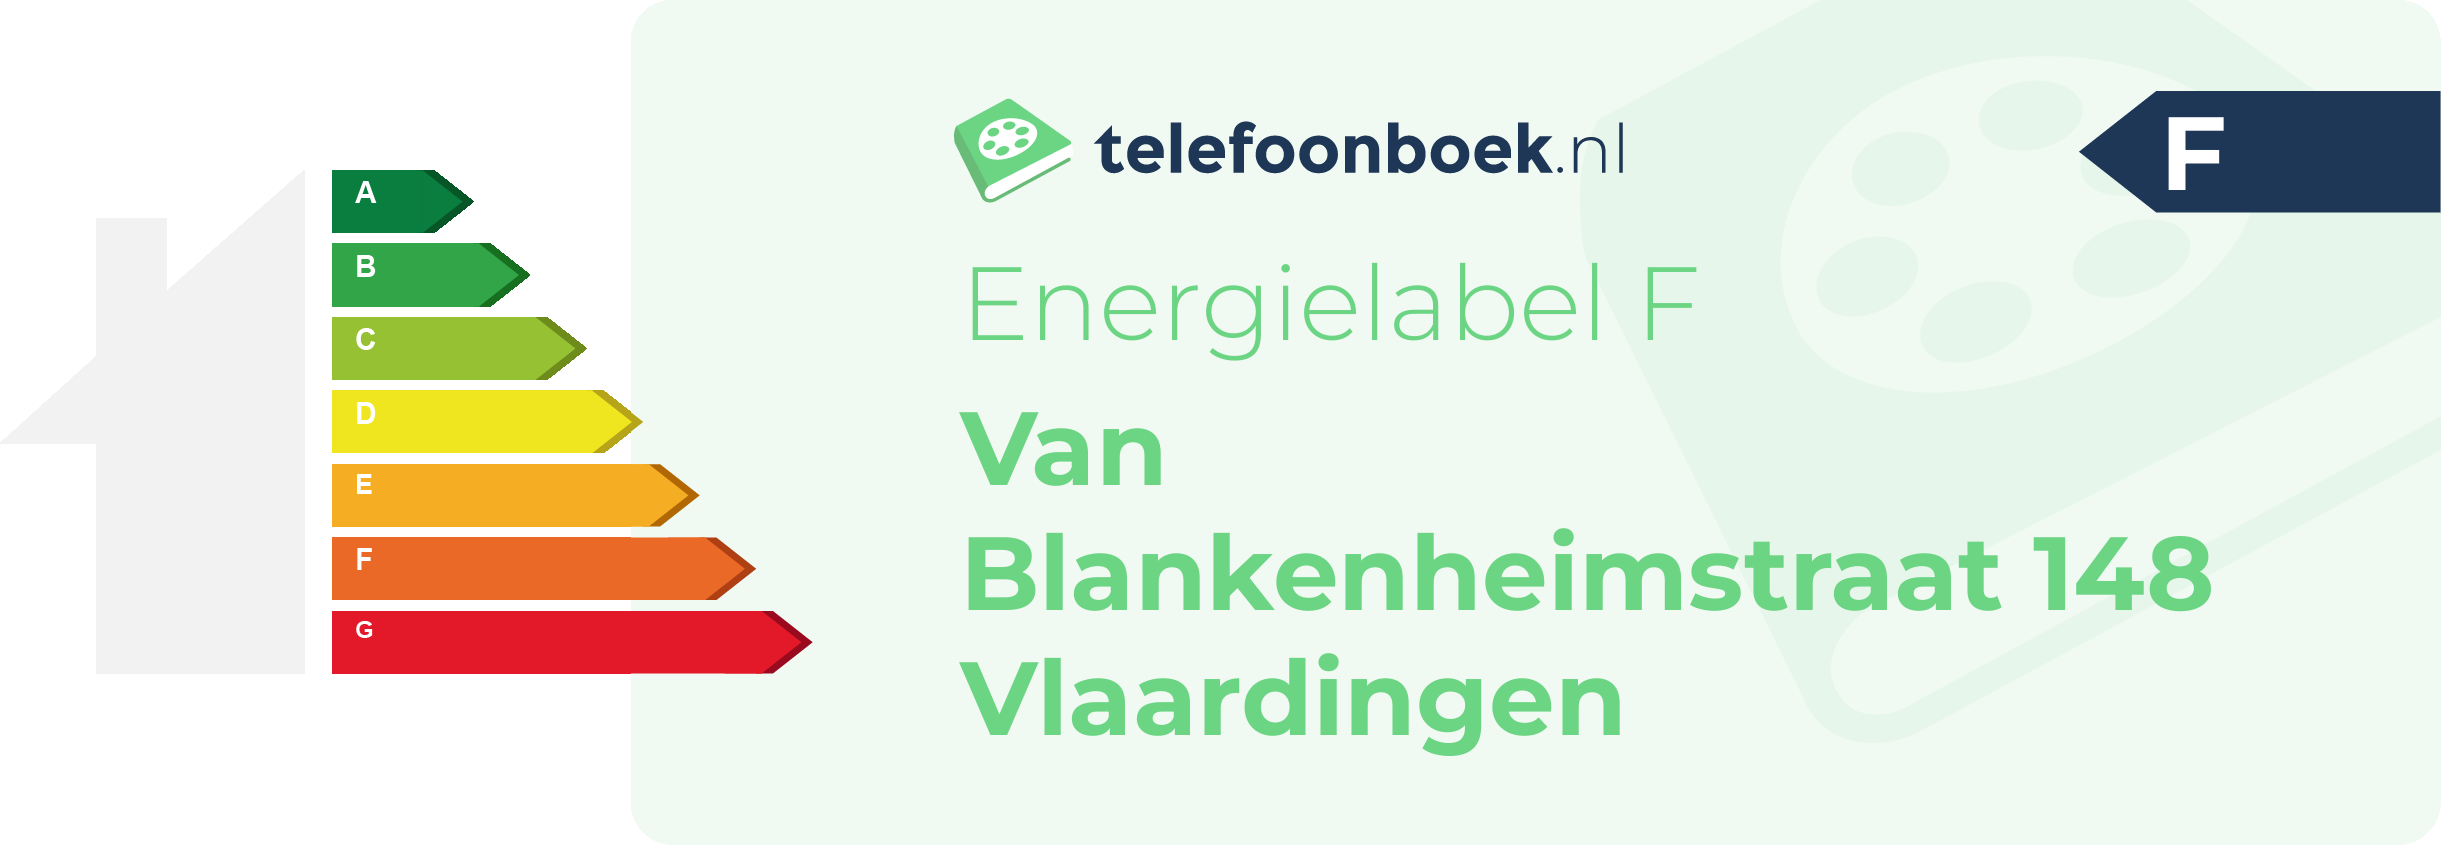 Energielabel Van Blankenheimstraat 148 Vlaardingen